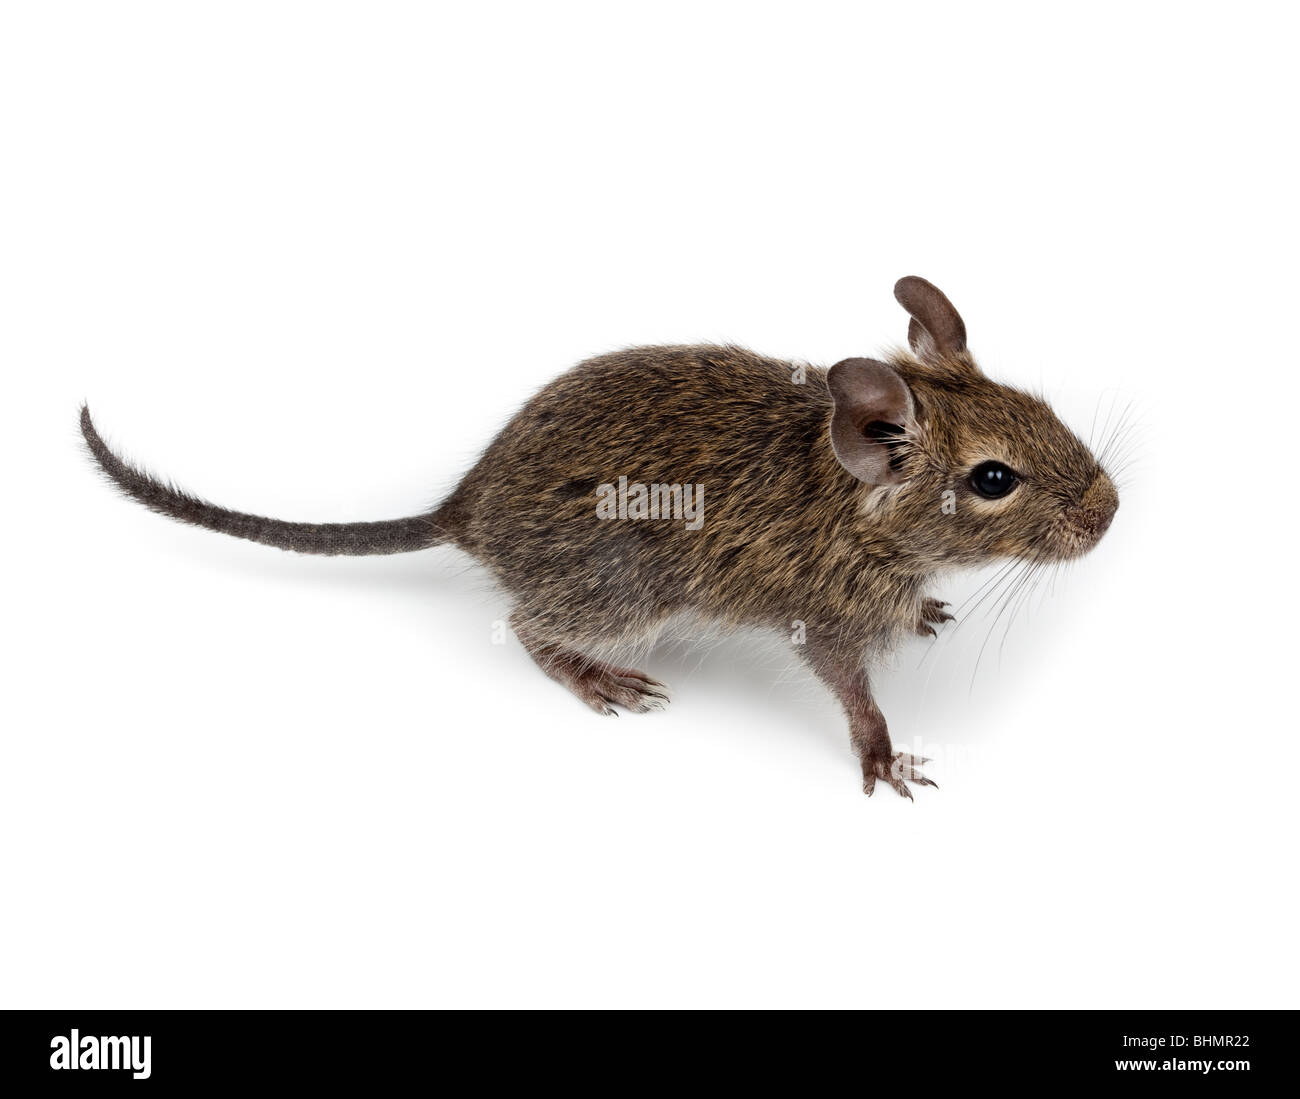 Degu comune o Brush-Tailed ratto (Octodon degus) in studio contro uno sfondo bianco. Foto Stock